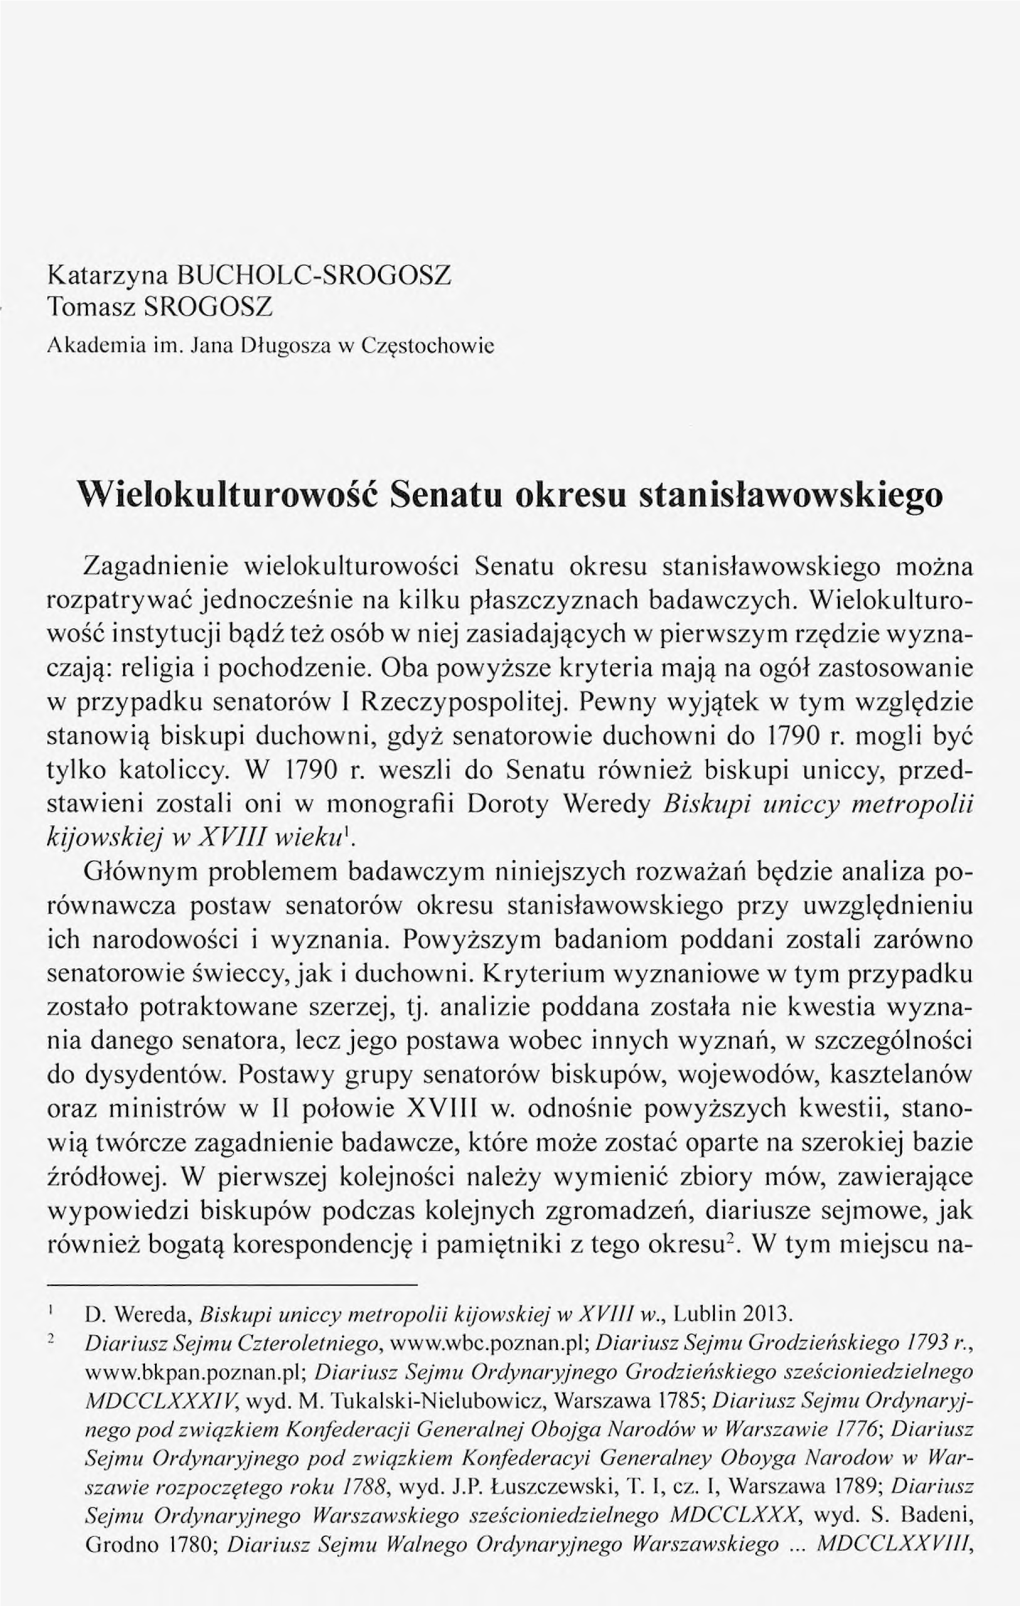 Wielokulturowość Senatu Okresu Stanisławowskiego